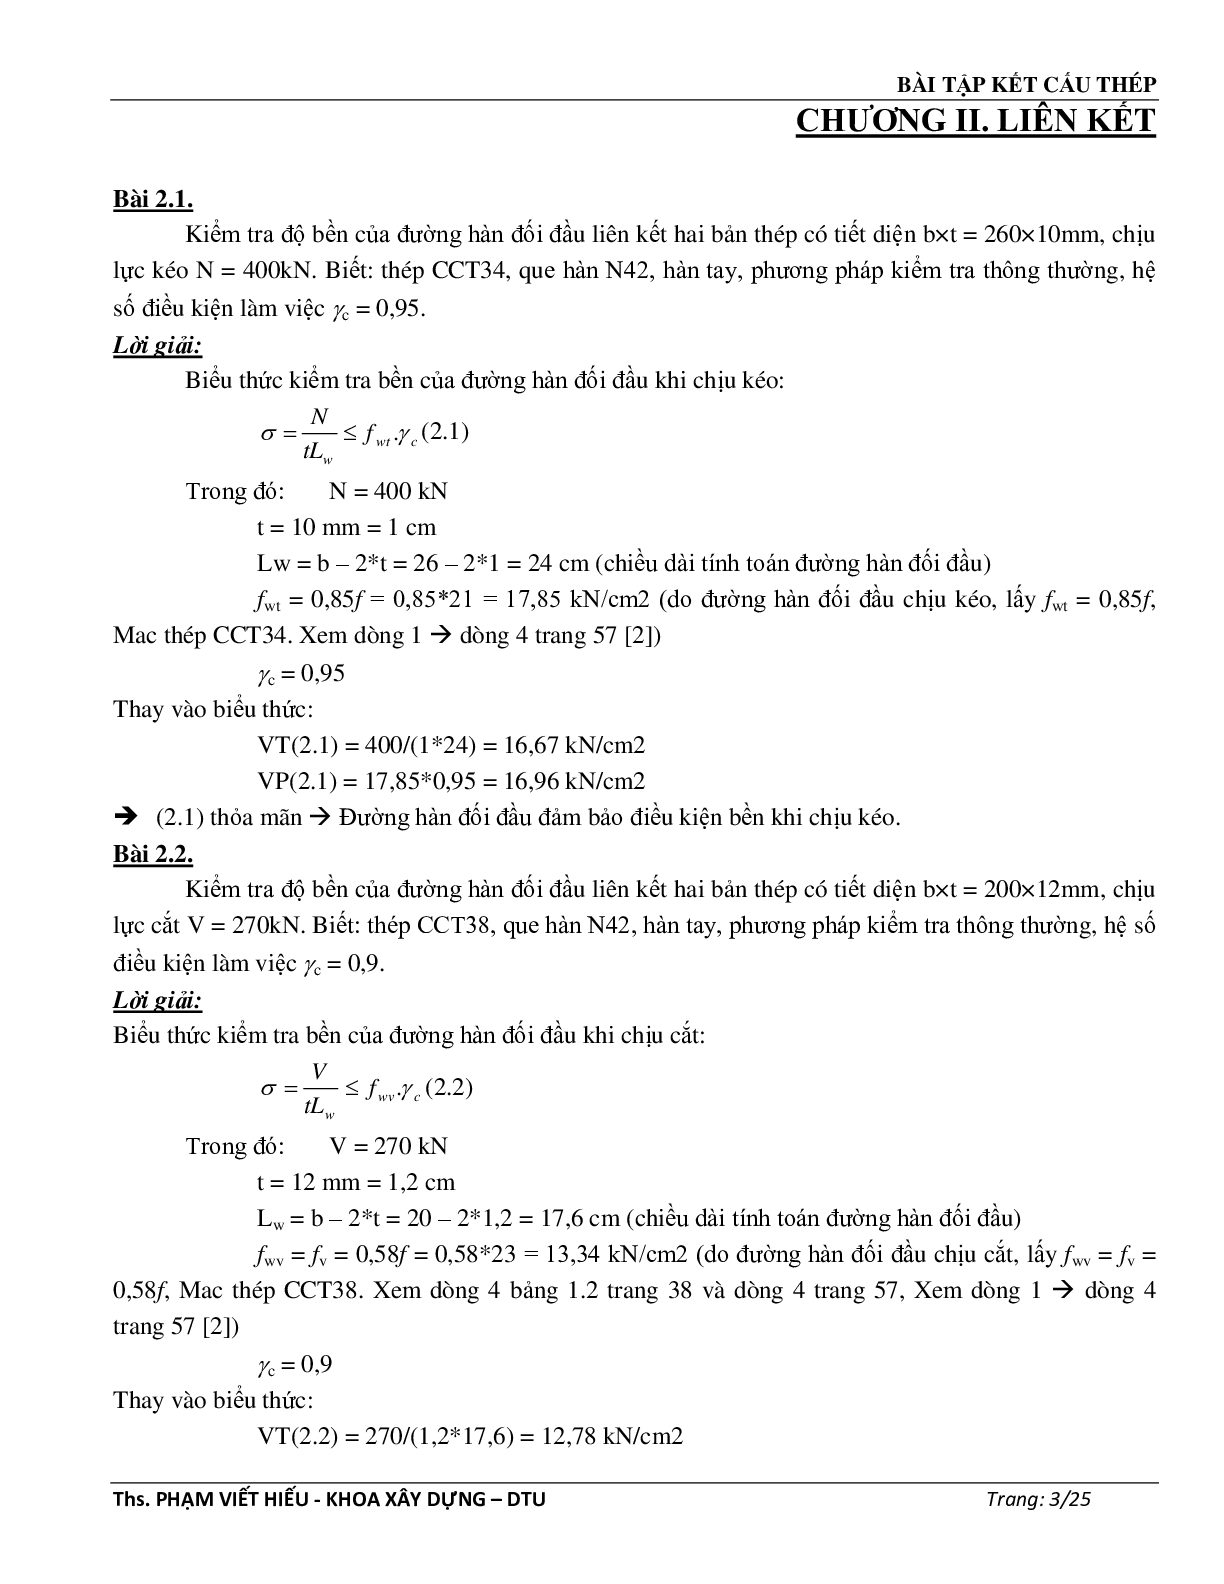 Ngân hàng bài tập môn Kết cấu thép (có đáp án) | Trường Đại học Duy Tân (trang 4)